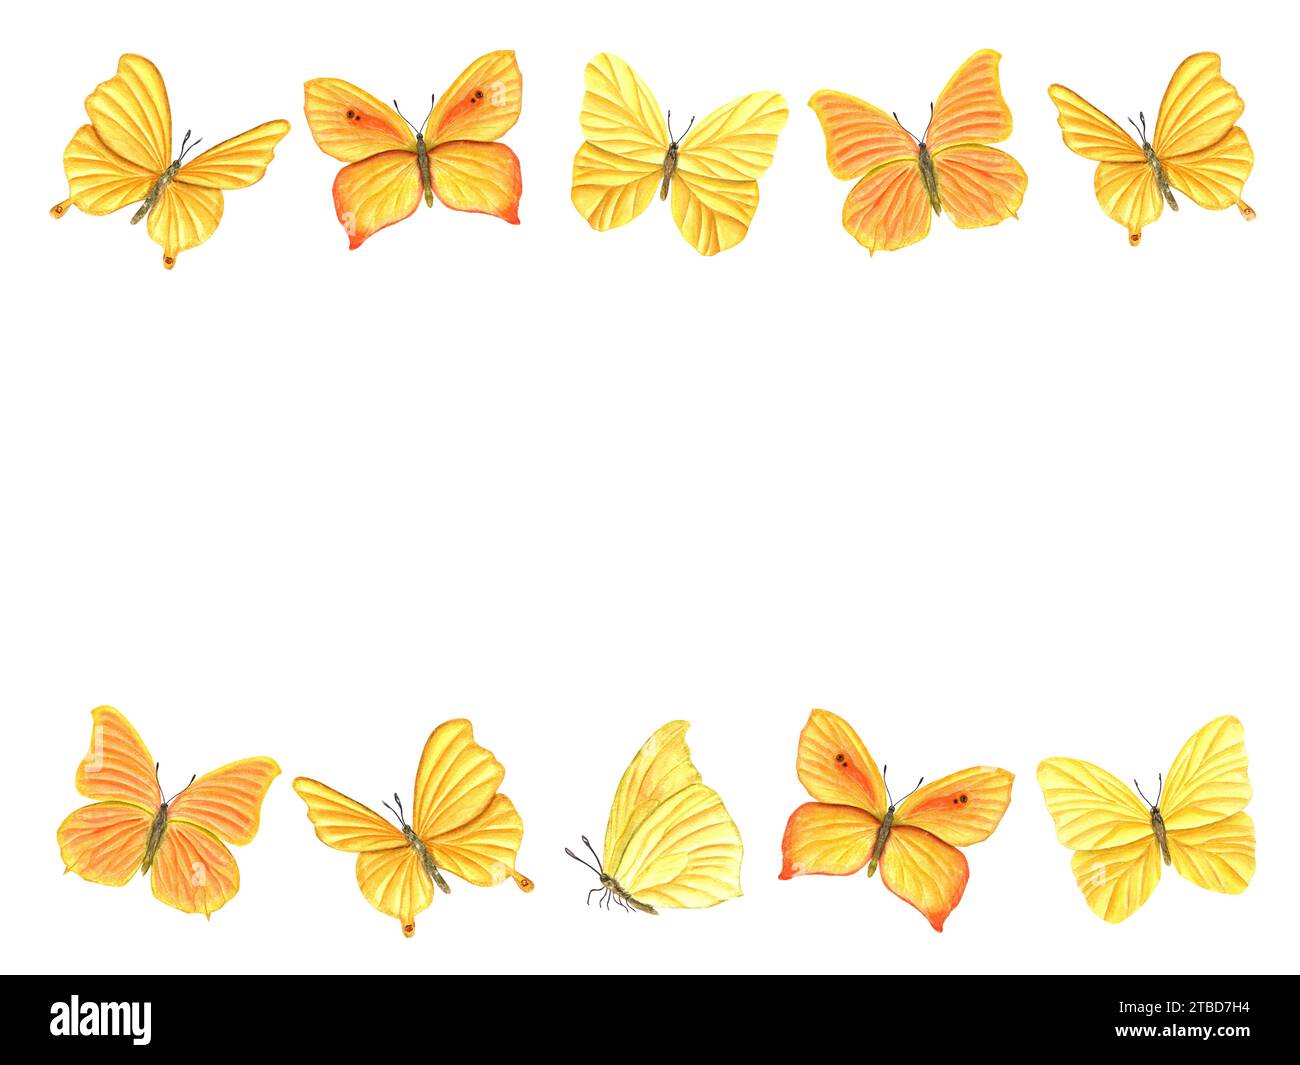 Horizontaler Rahmen von gelb-orangen Schmetterlingen. Flatternde schmetterlinge, tropische Fliegen, sitzende Insekten mit Flügeln. Aquarellabbildung. Stockfoto